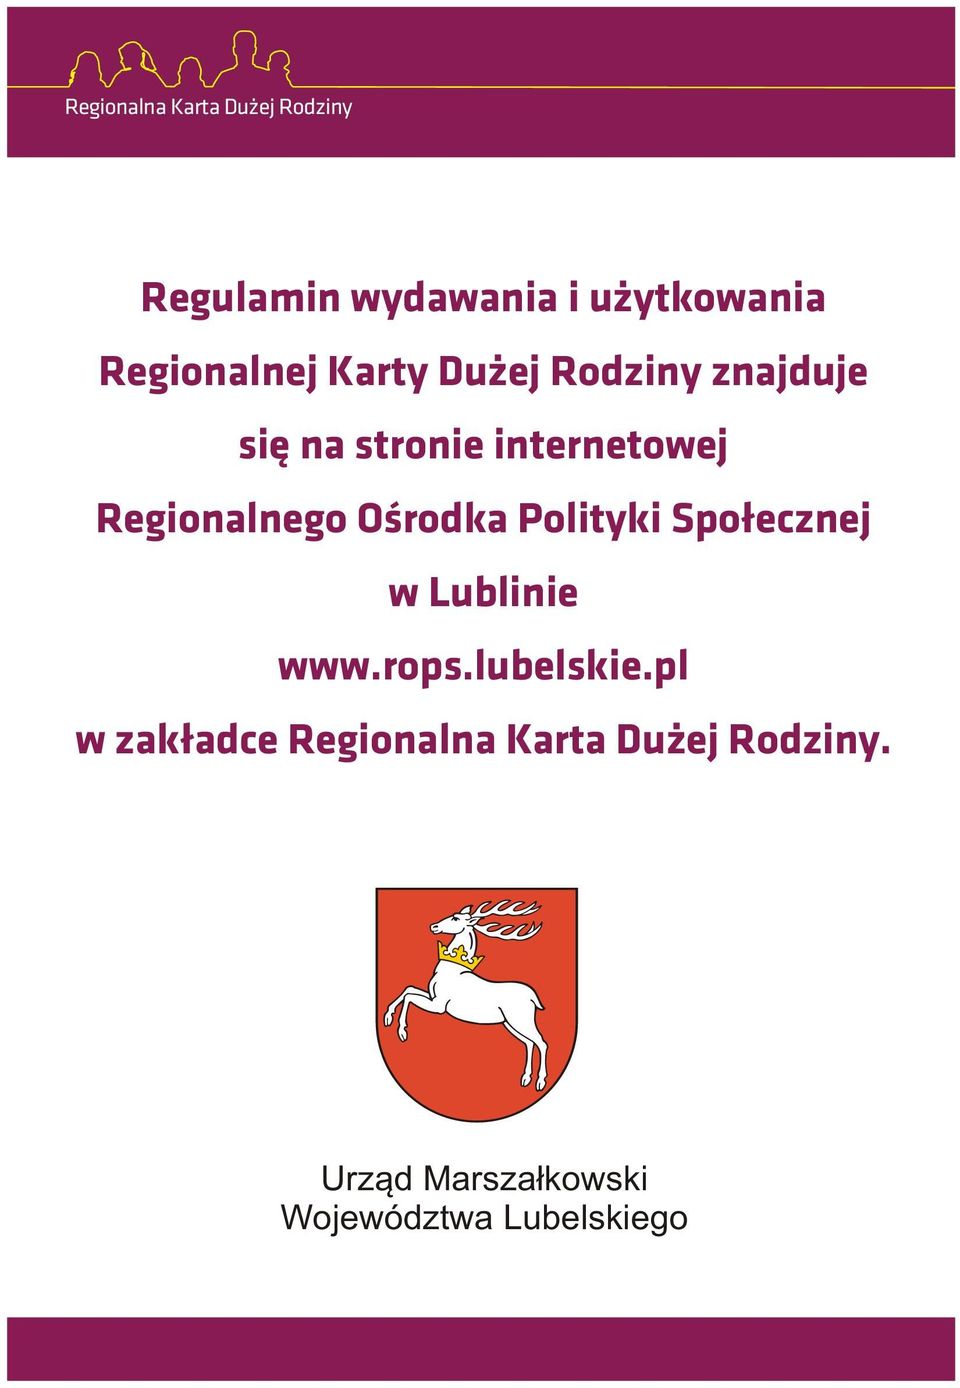 Polityki Spo³ecznej w Lublinie www.rops.lubelskie.